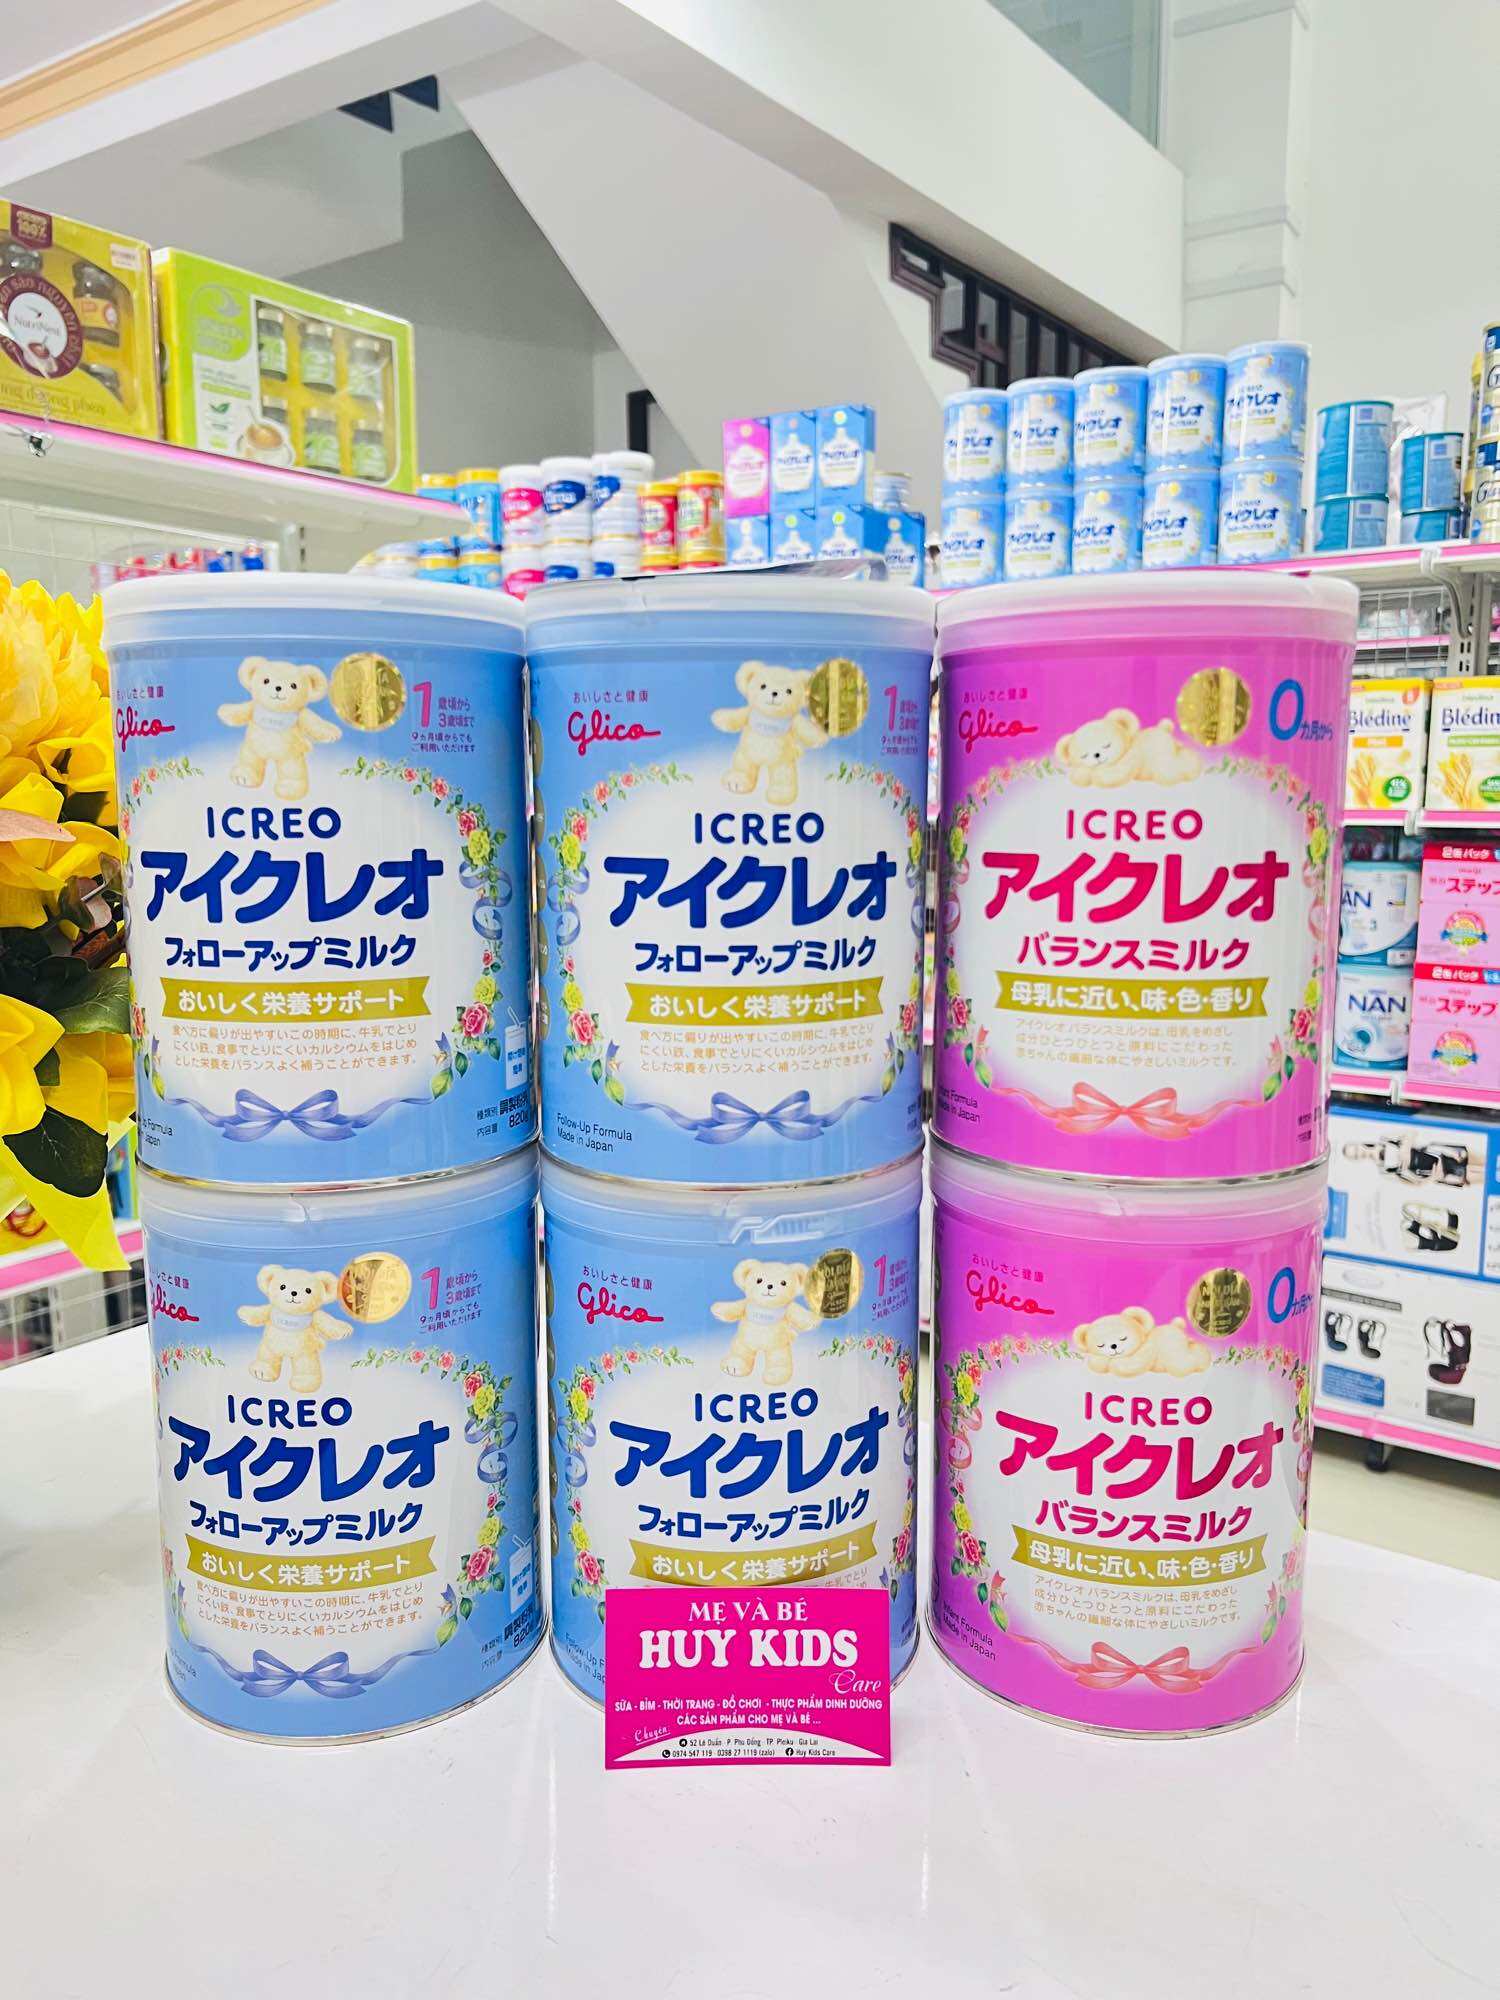 Sản phẩm sữa Glico số 1 - nhập khẩu từ Nhật Bản